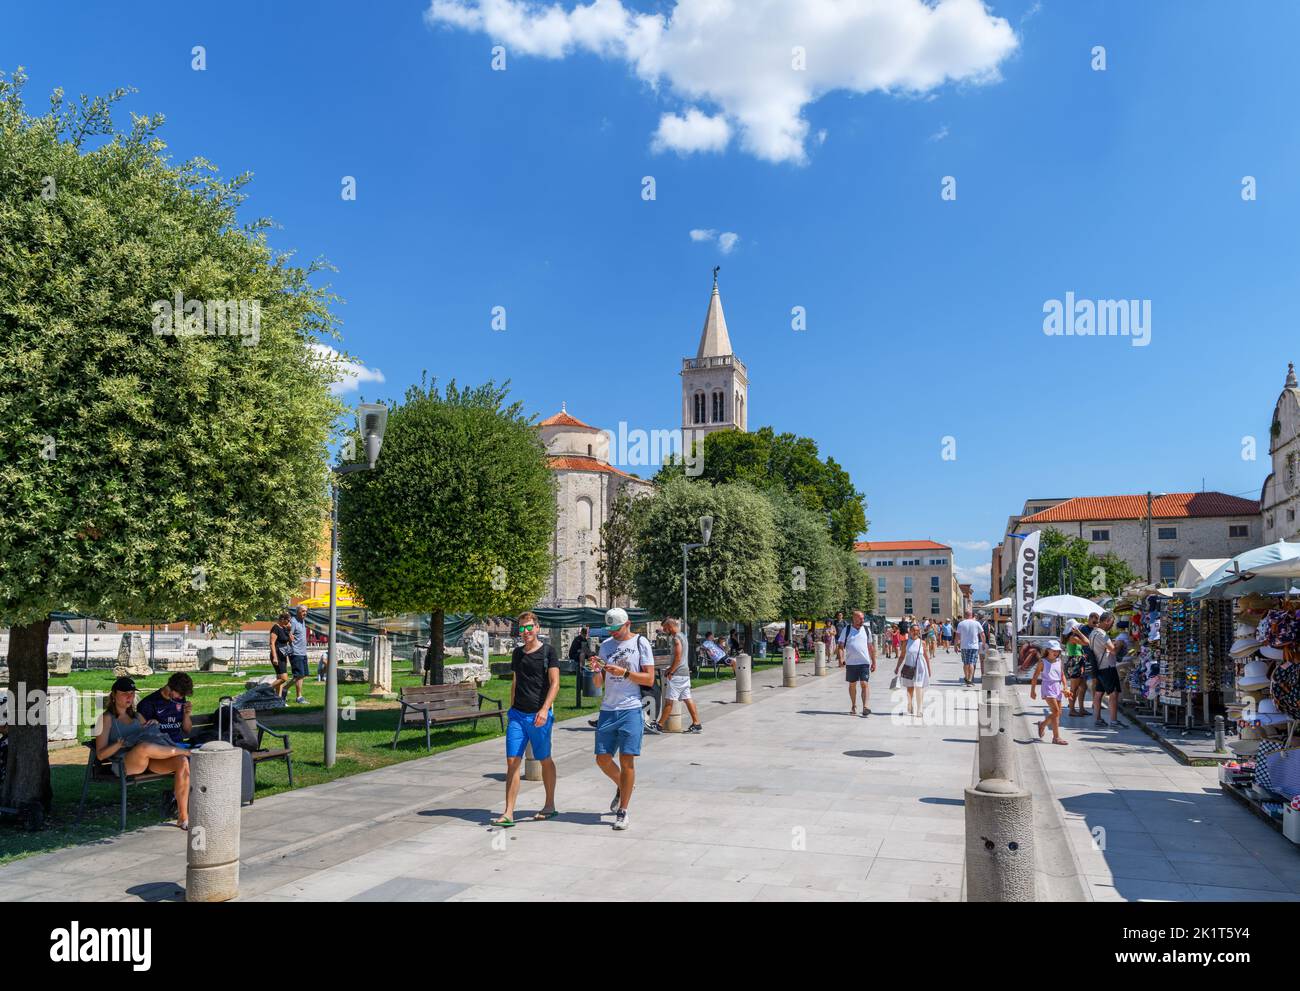 Le Forum romain, la tour de cloche de la cathédrale Saint Anastasia et l'église Saint Donatus dans le centre historique de Zadar, Croatie Banque D'Images